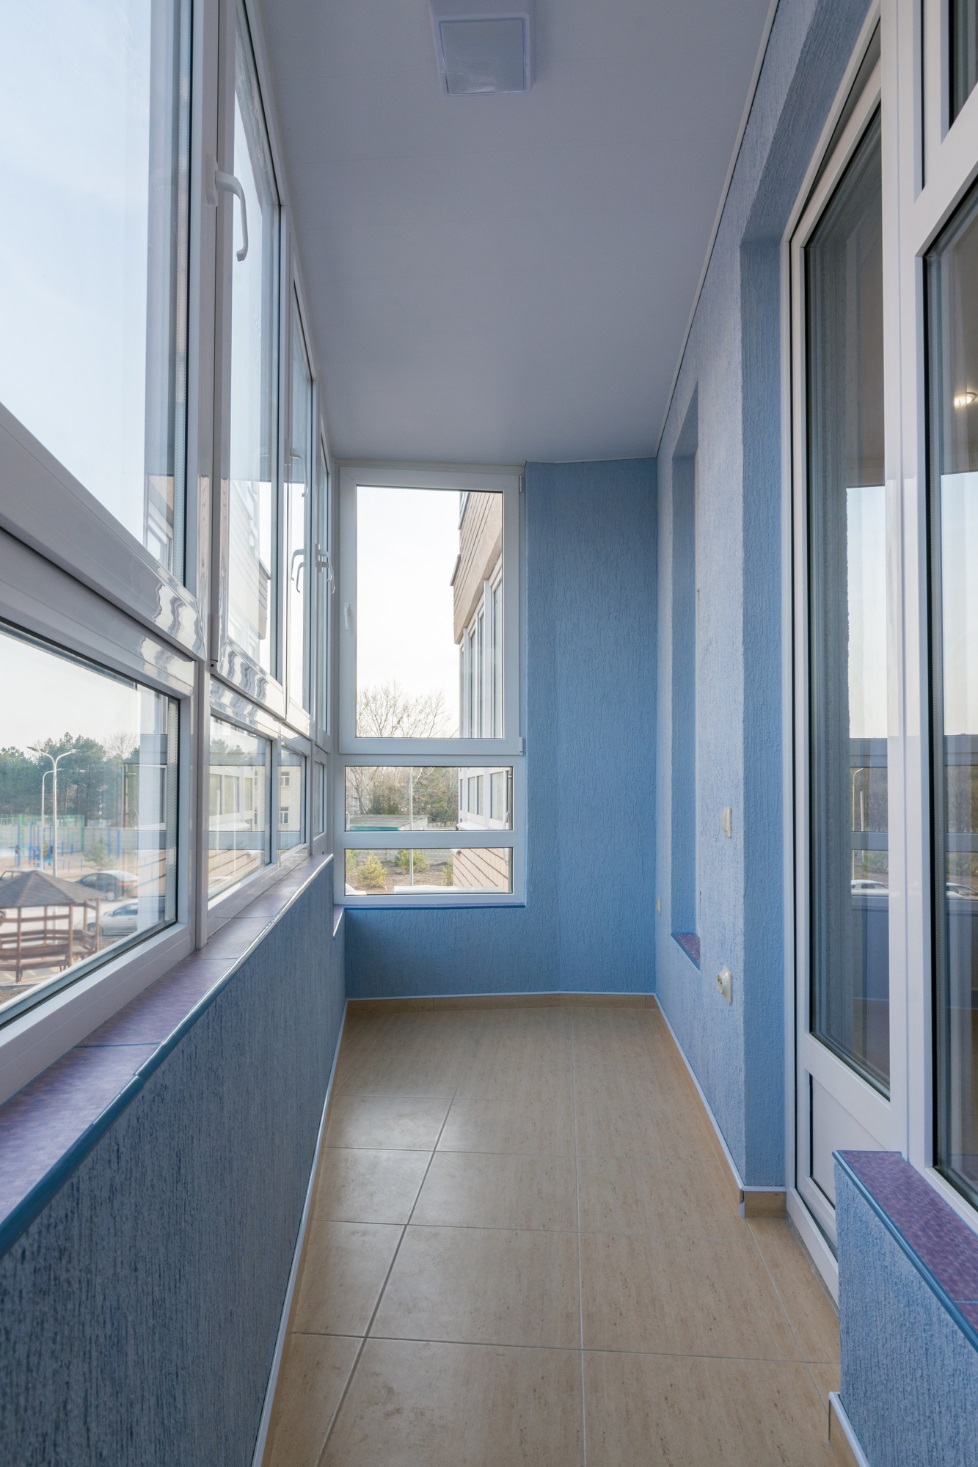  стеклопакеты лучше ставить на лоджию и балкон для утепления: окна .